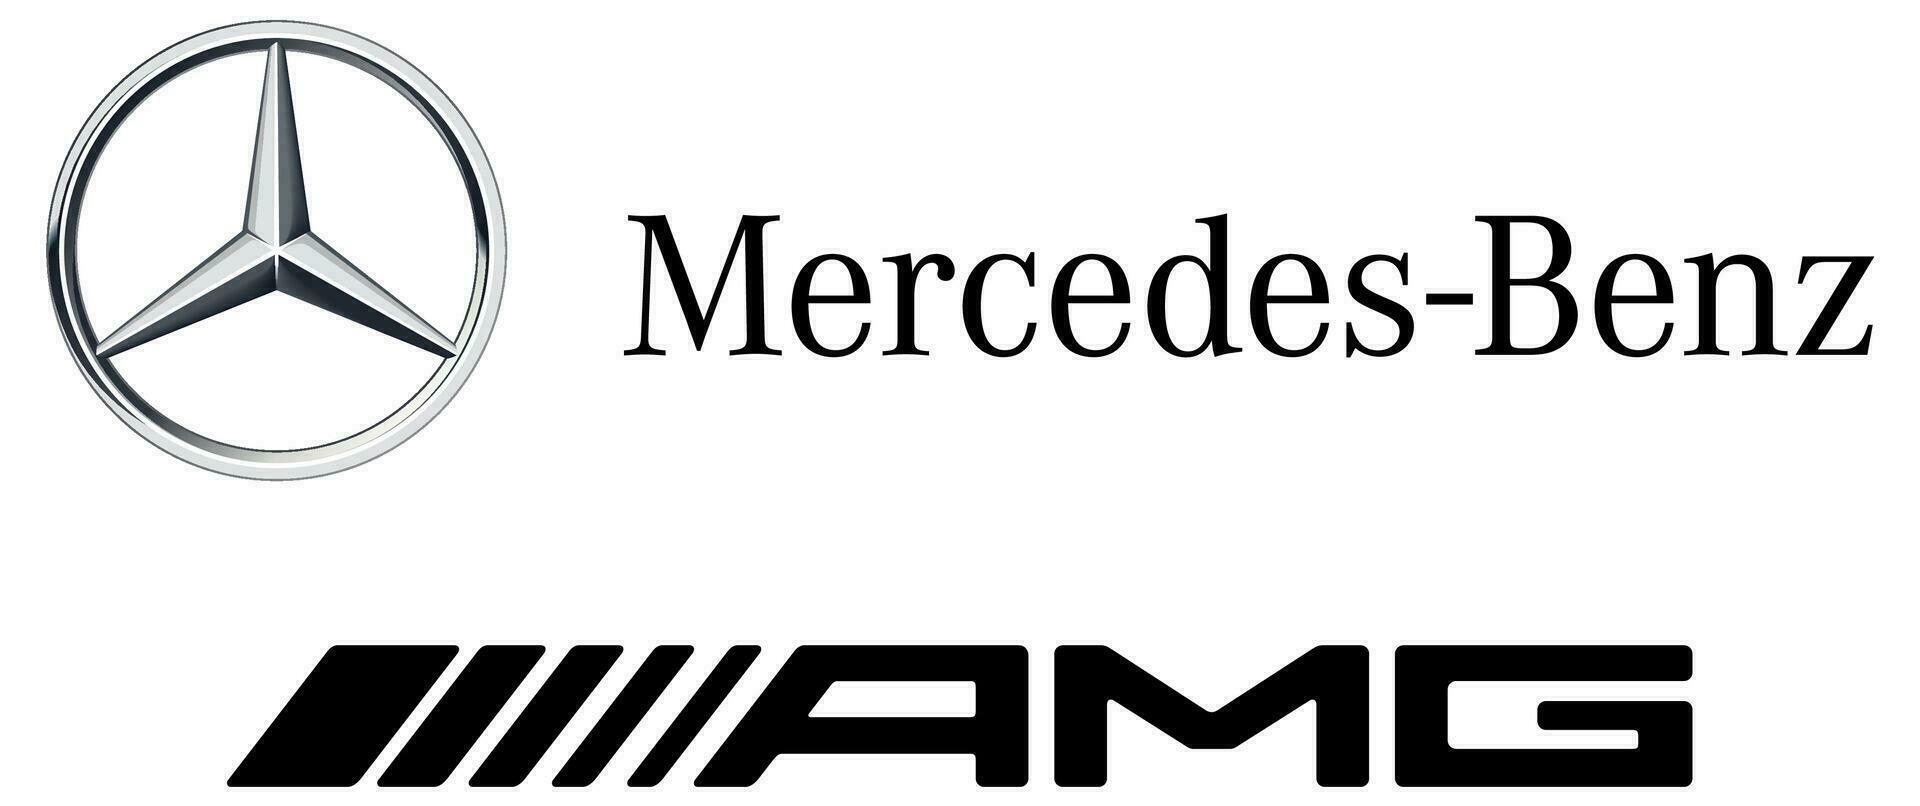 mercedes benz amg coche logo vector